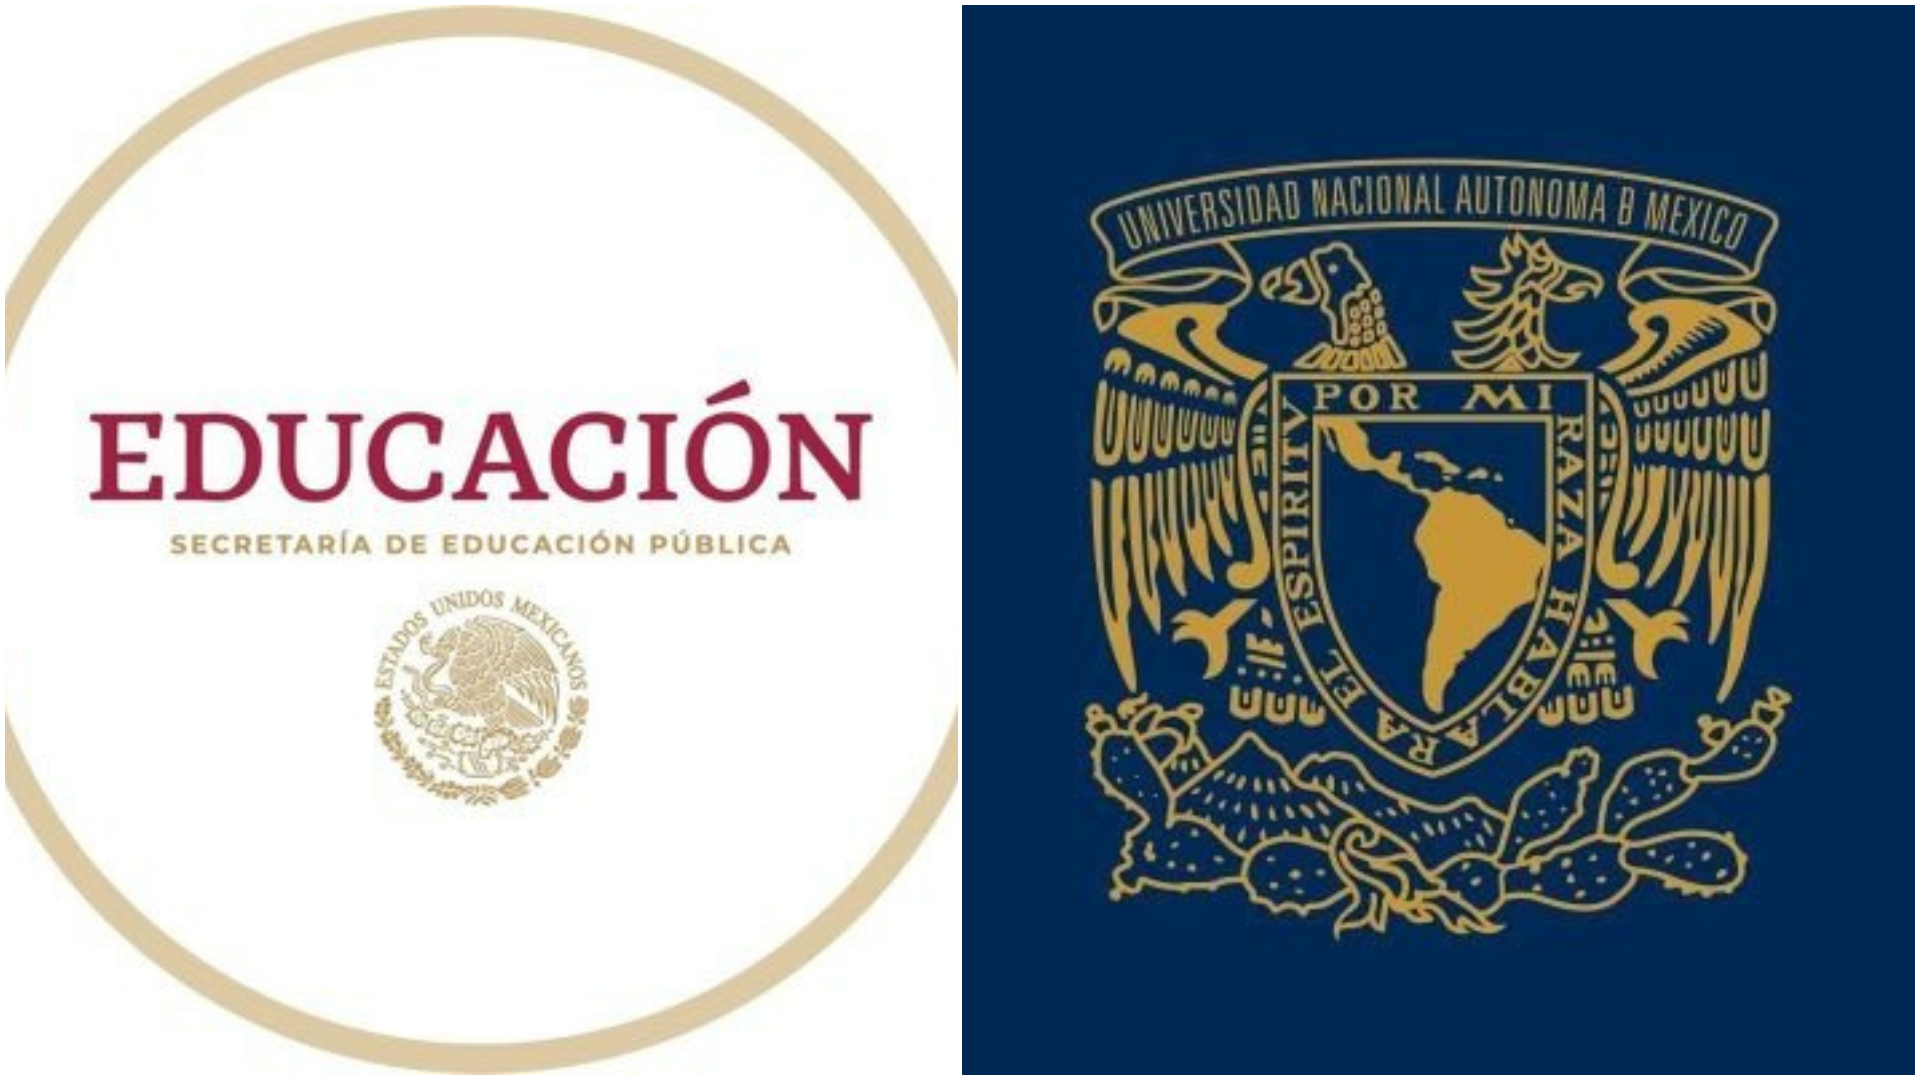 La Secretaría de Educación Pública respondió al oficio que mandó el rector a la UNAM respecto a la situación de la ministra Yasmín Esquivel (UNAM/SEP)